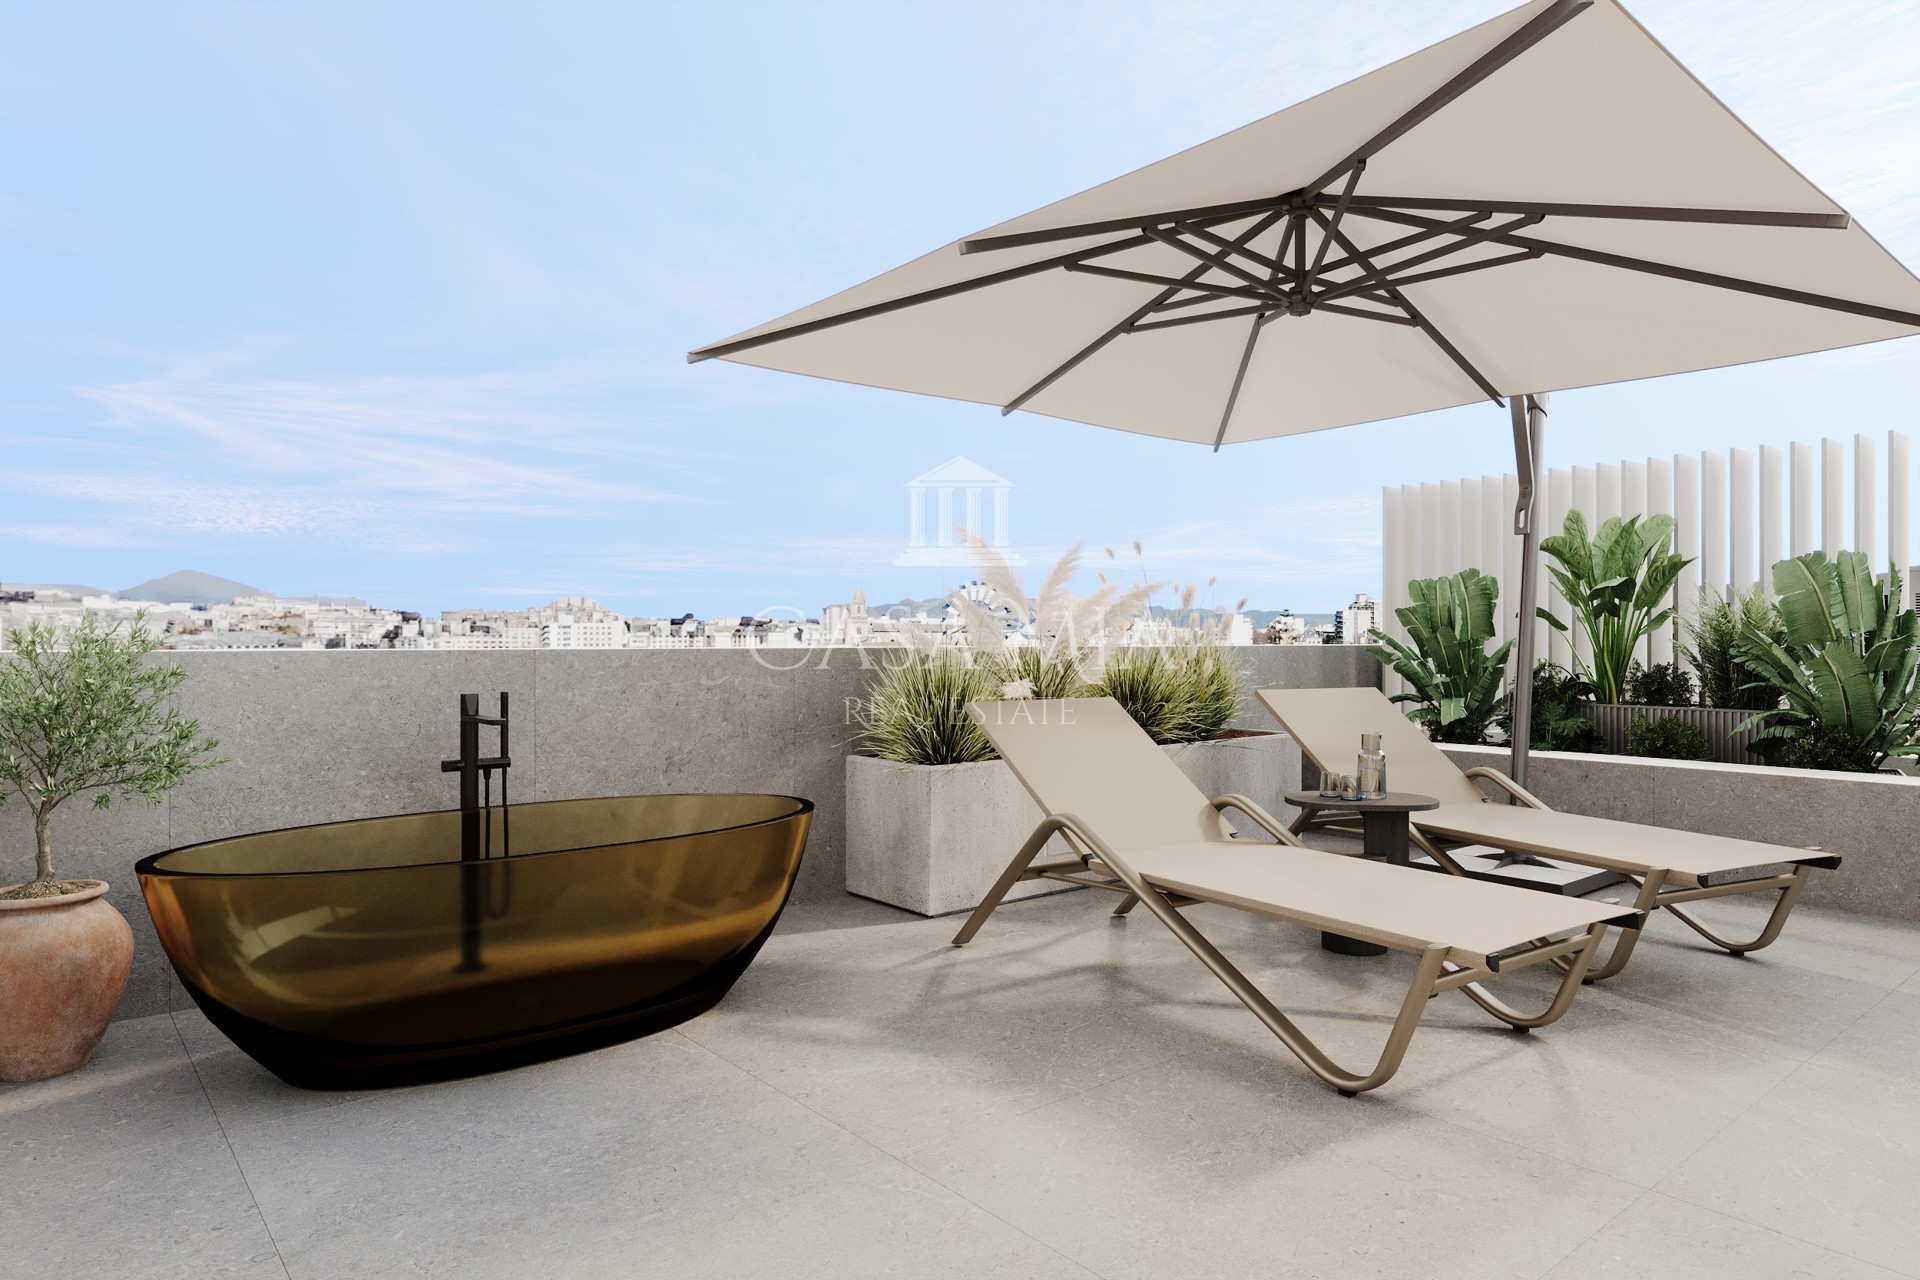 Penthouse triplex met 3 slaapkamers in luxe nieuwbouwwijk met hotelkarakter, Palma